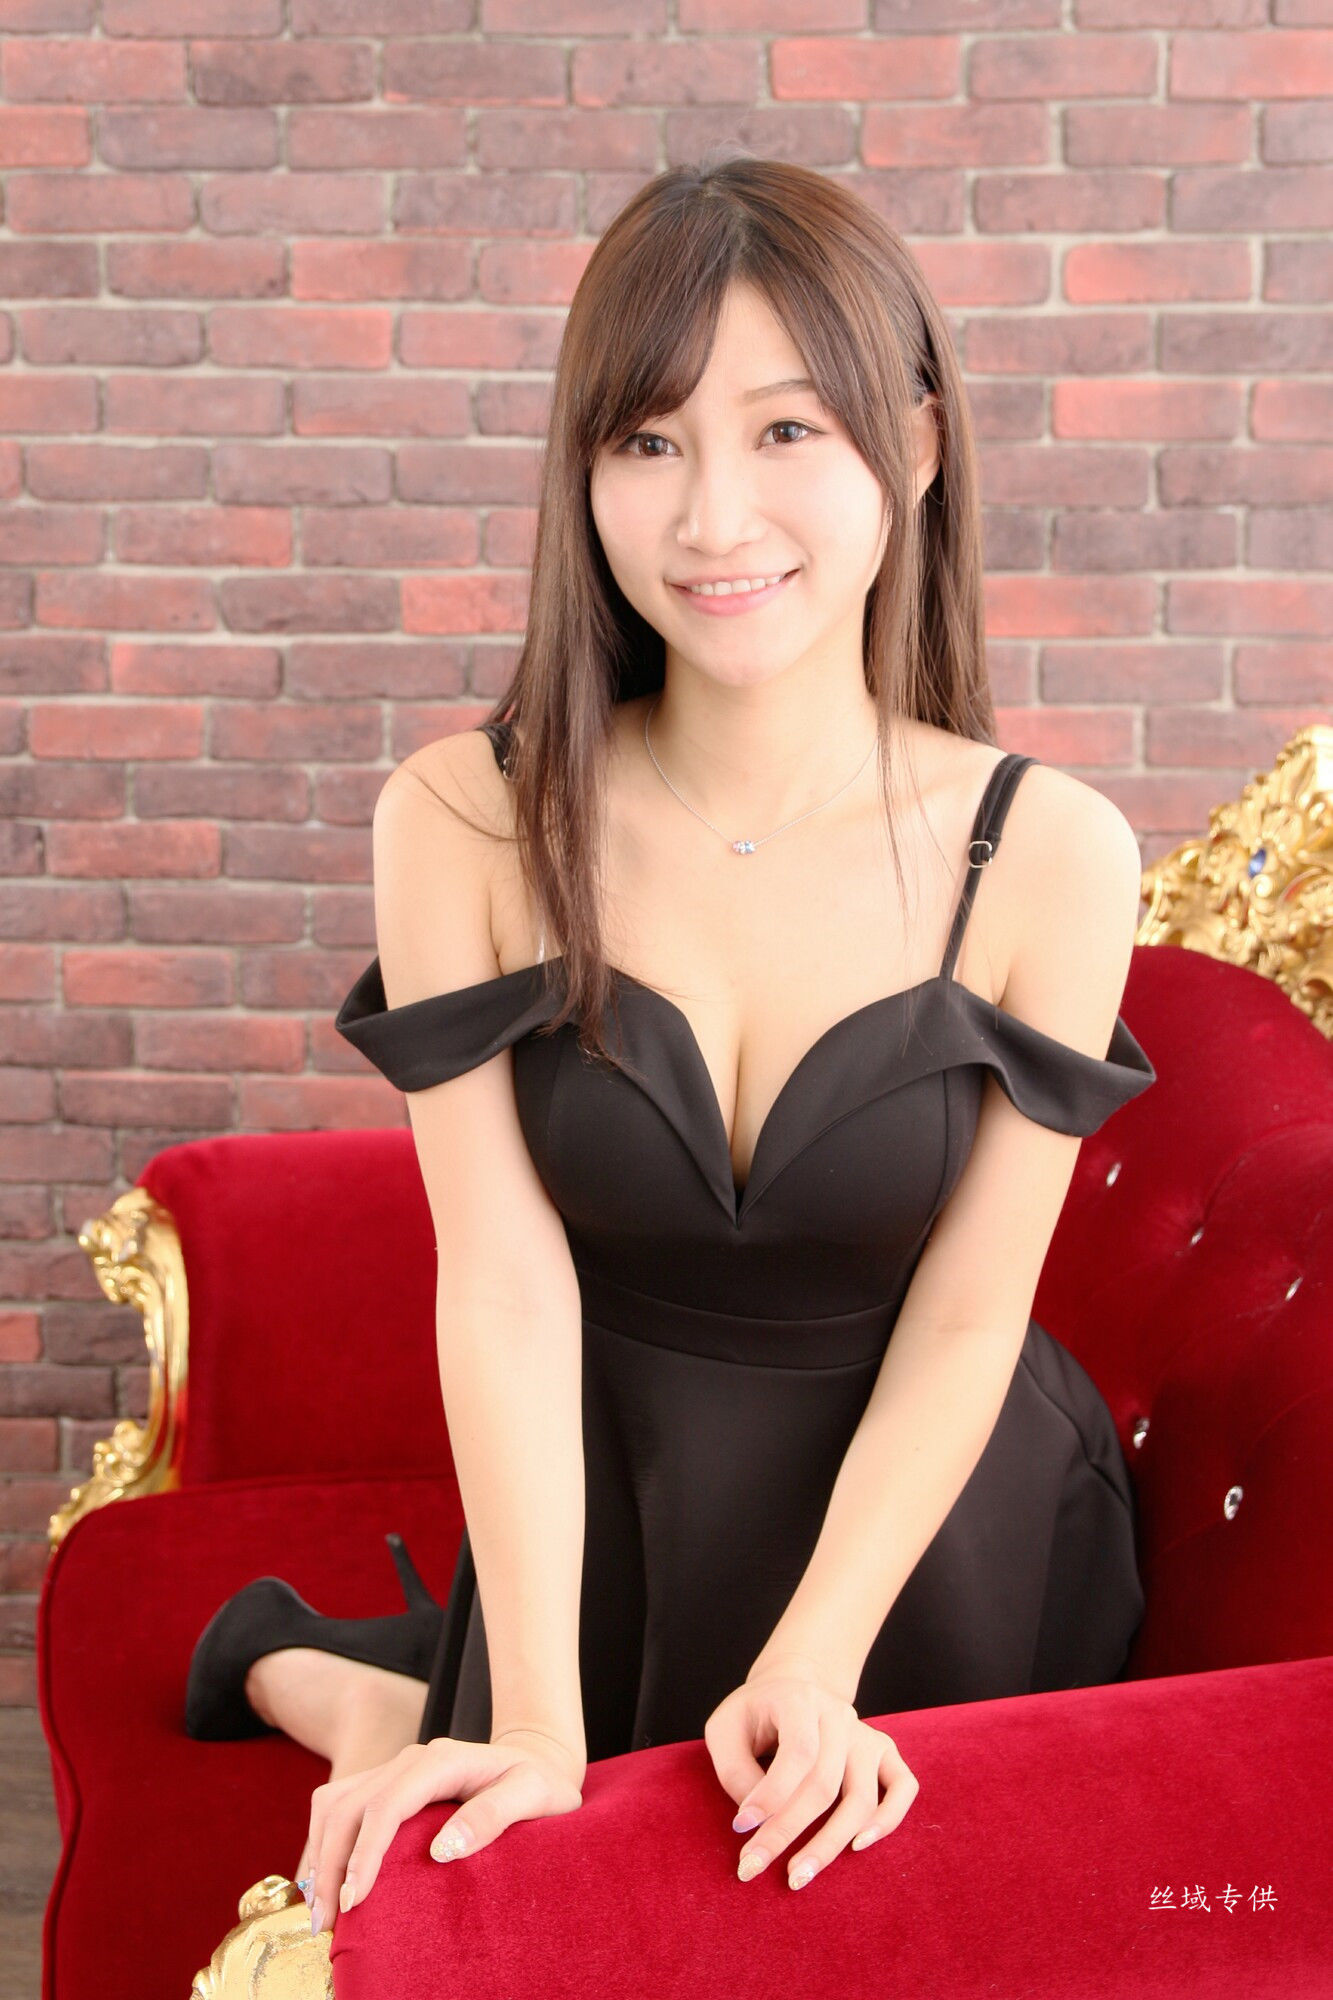 [Taiwan Zhengmei] Xiao Zhuer "55 Studio Shooting" Dress Page 47 No.b8c0c9